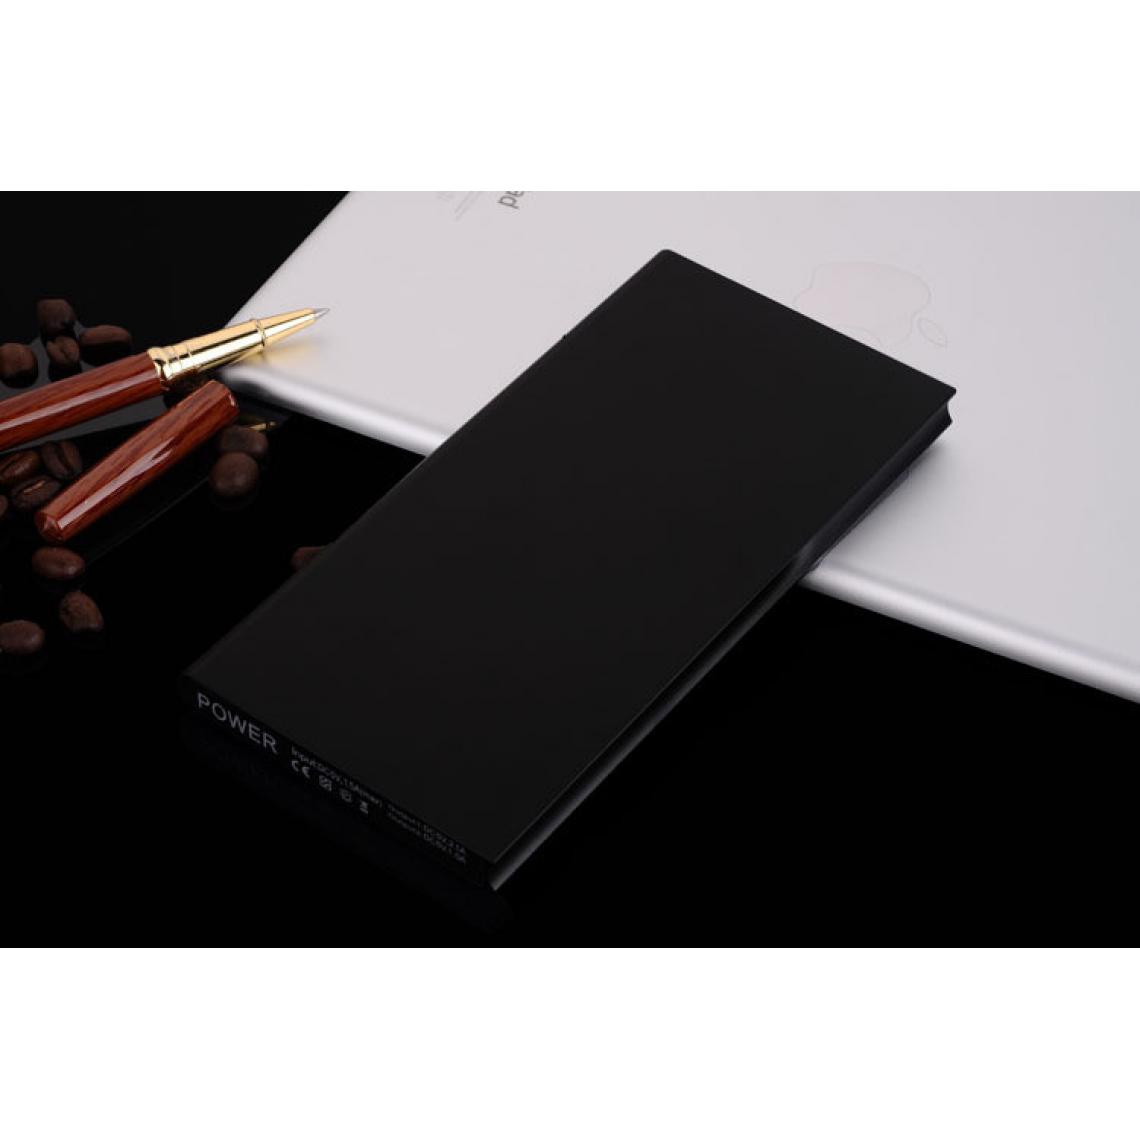 Shot - Batterie Externe Plate pour HUAWEI P smart 2019 Smartphone Tablette Chargeur Power Bank 6000mAh 2 Port USB (NOIR) - Chargeur secteur téléphone